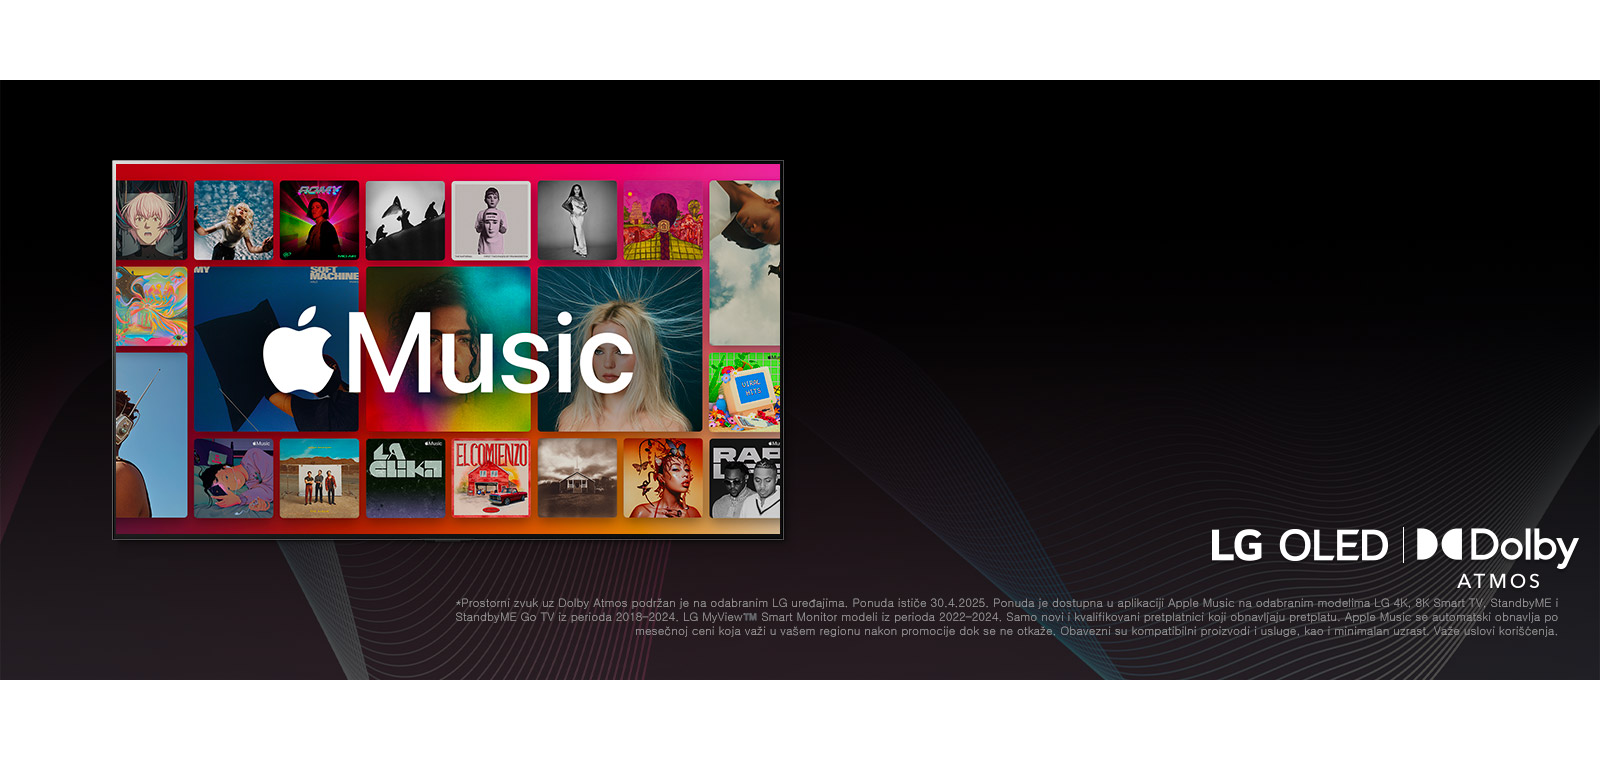 Raspored albuma u vidu mreže sa logotipom usluge Apple Music u prvom planu, kao i LG OLED i Dolby Atmos logotipima ispod.